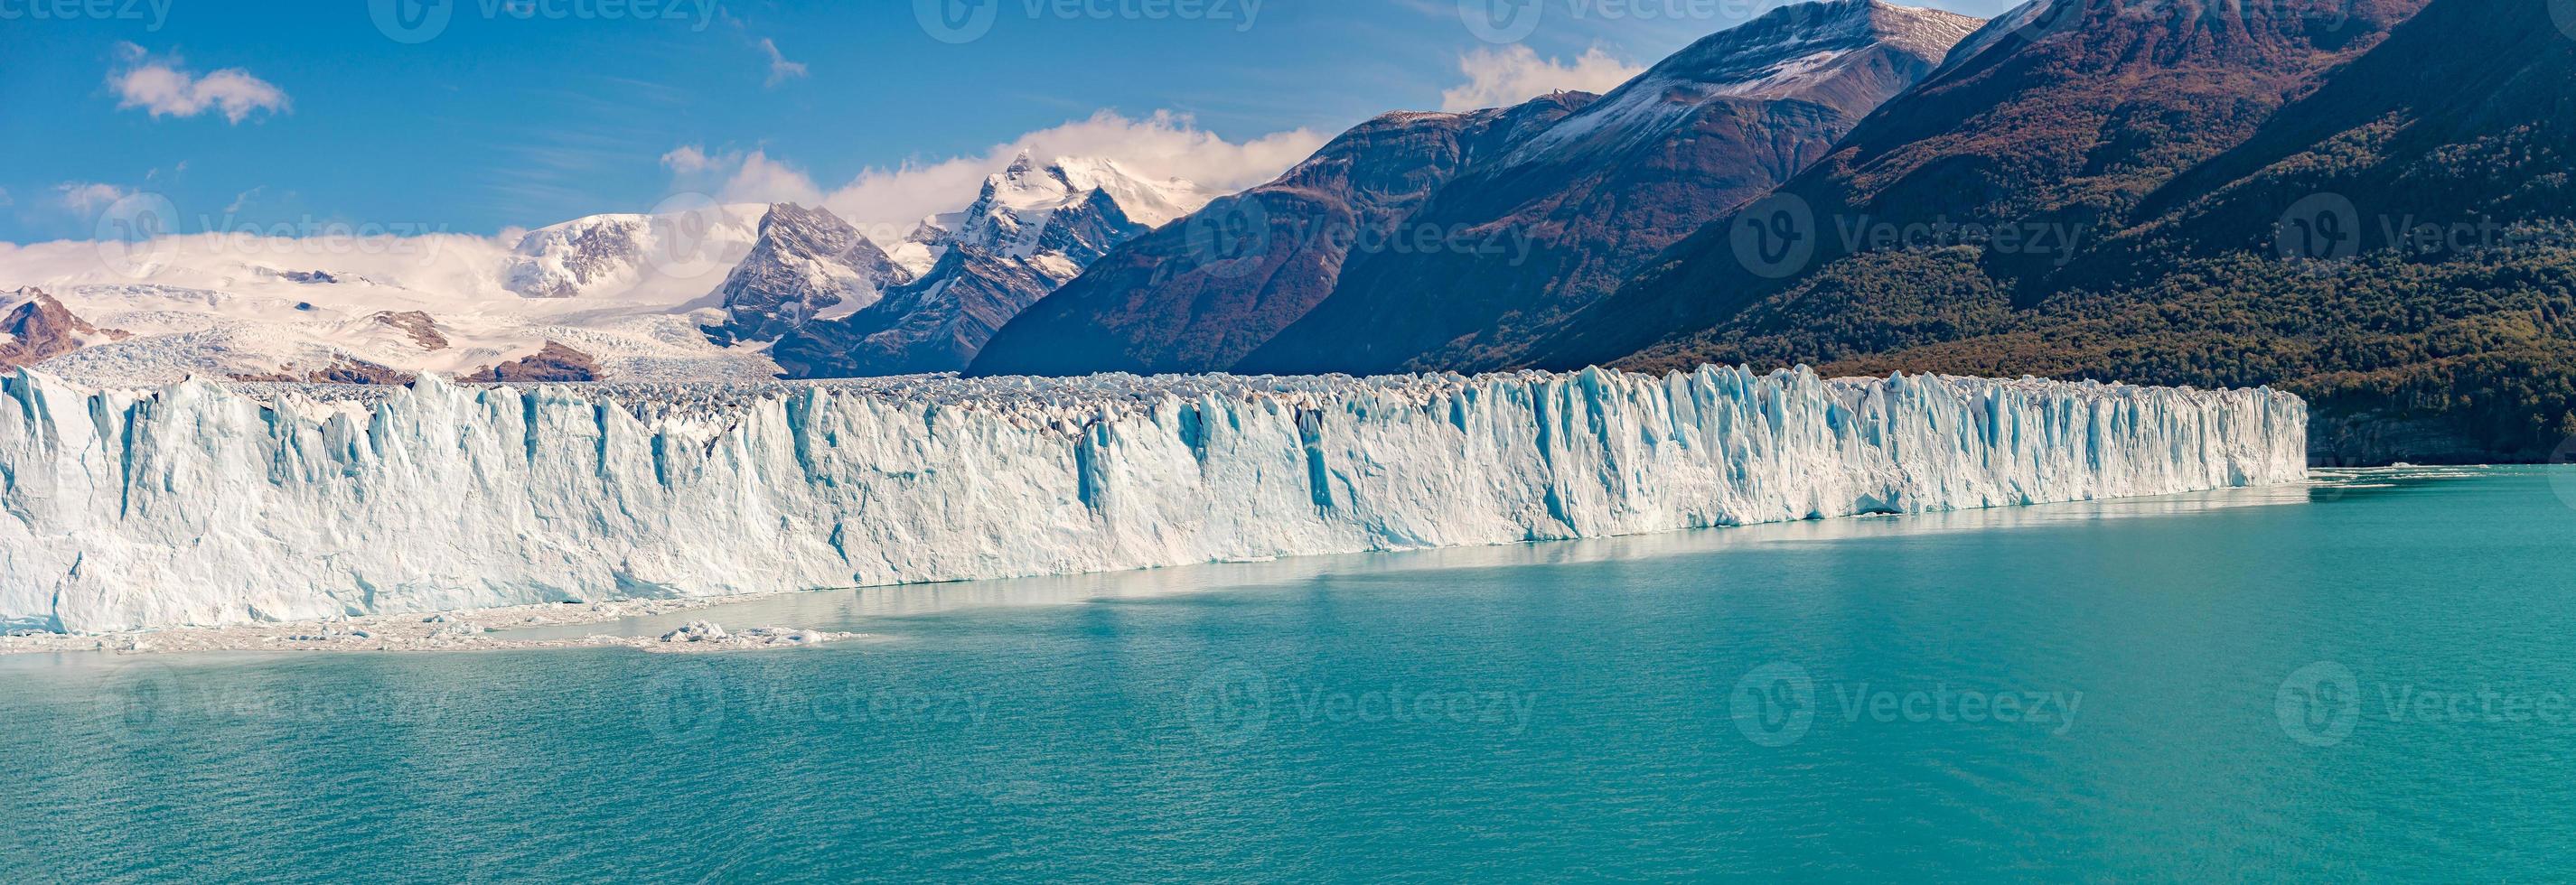 vista panoramica sul gigantesco ghiacciaio perito moreno in patagonia con cielo blu e acqua turchese laguna glaciale, sud america, argentina, a giornata di sole.. foto